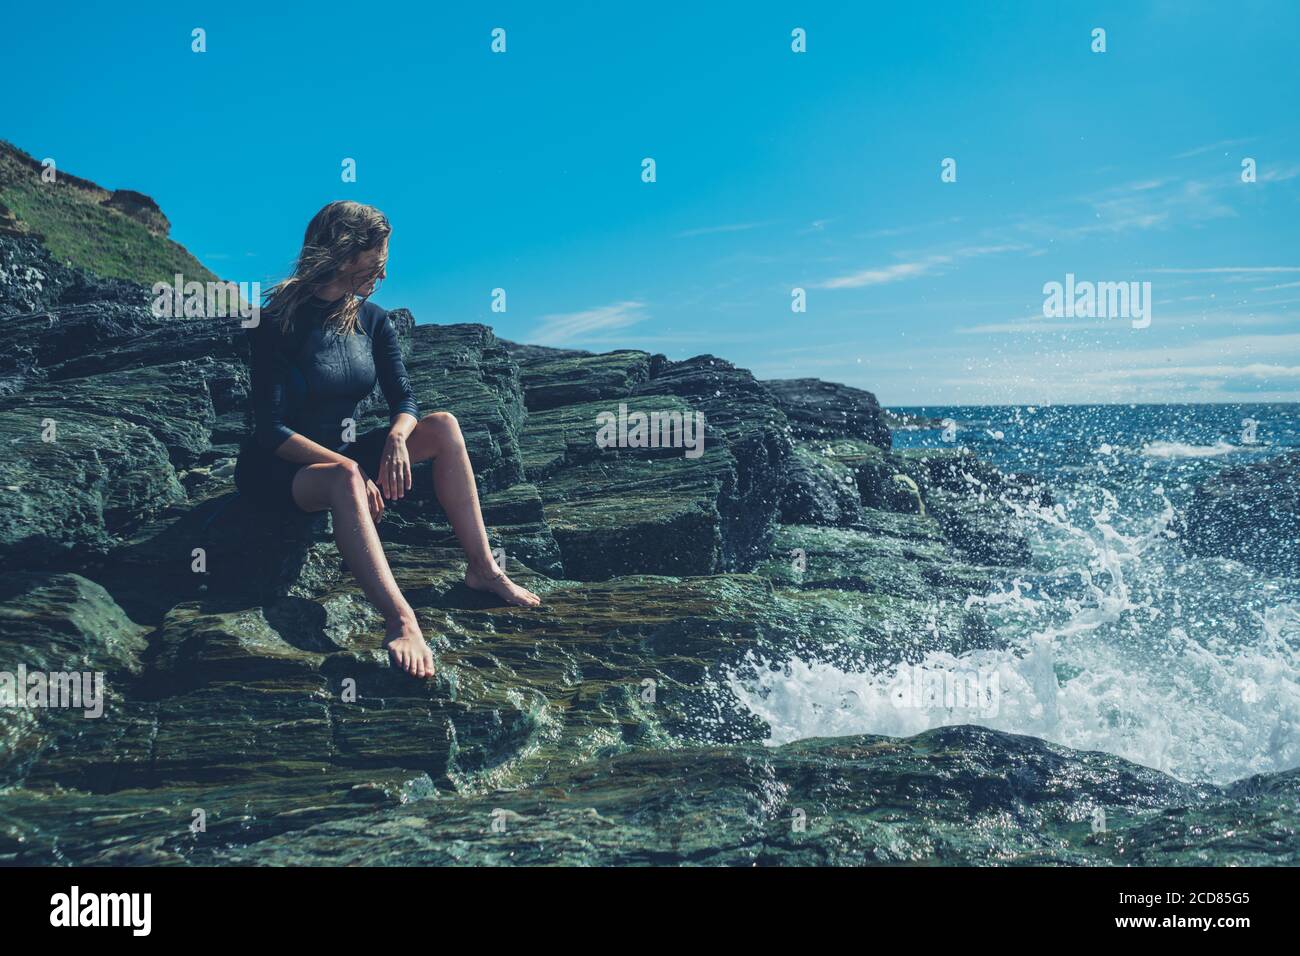 Une jeune femme portant une combinaison est assise sur le rochers au bord de la mer tandis que les vagues s'écrasant Banque D'Images